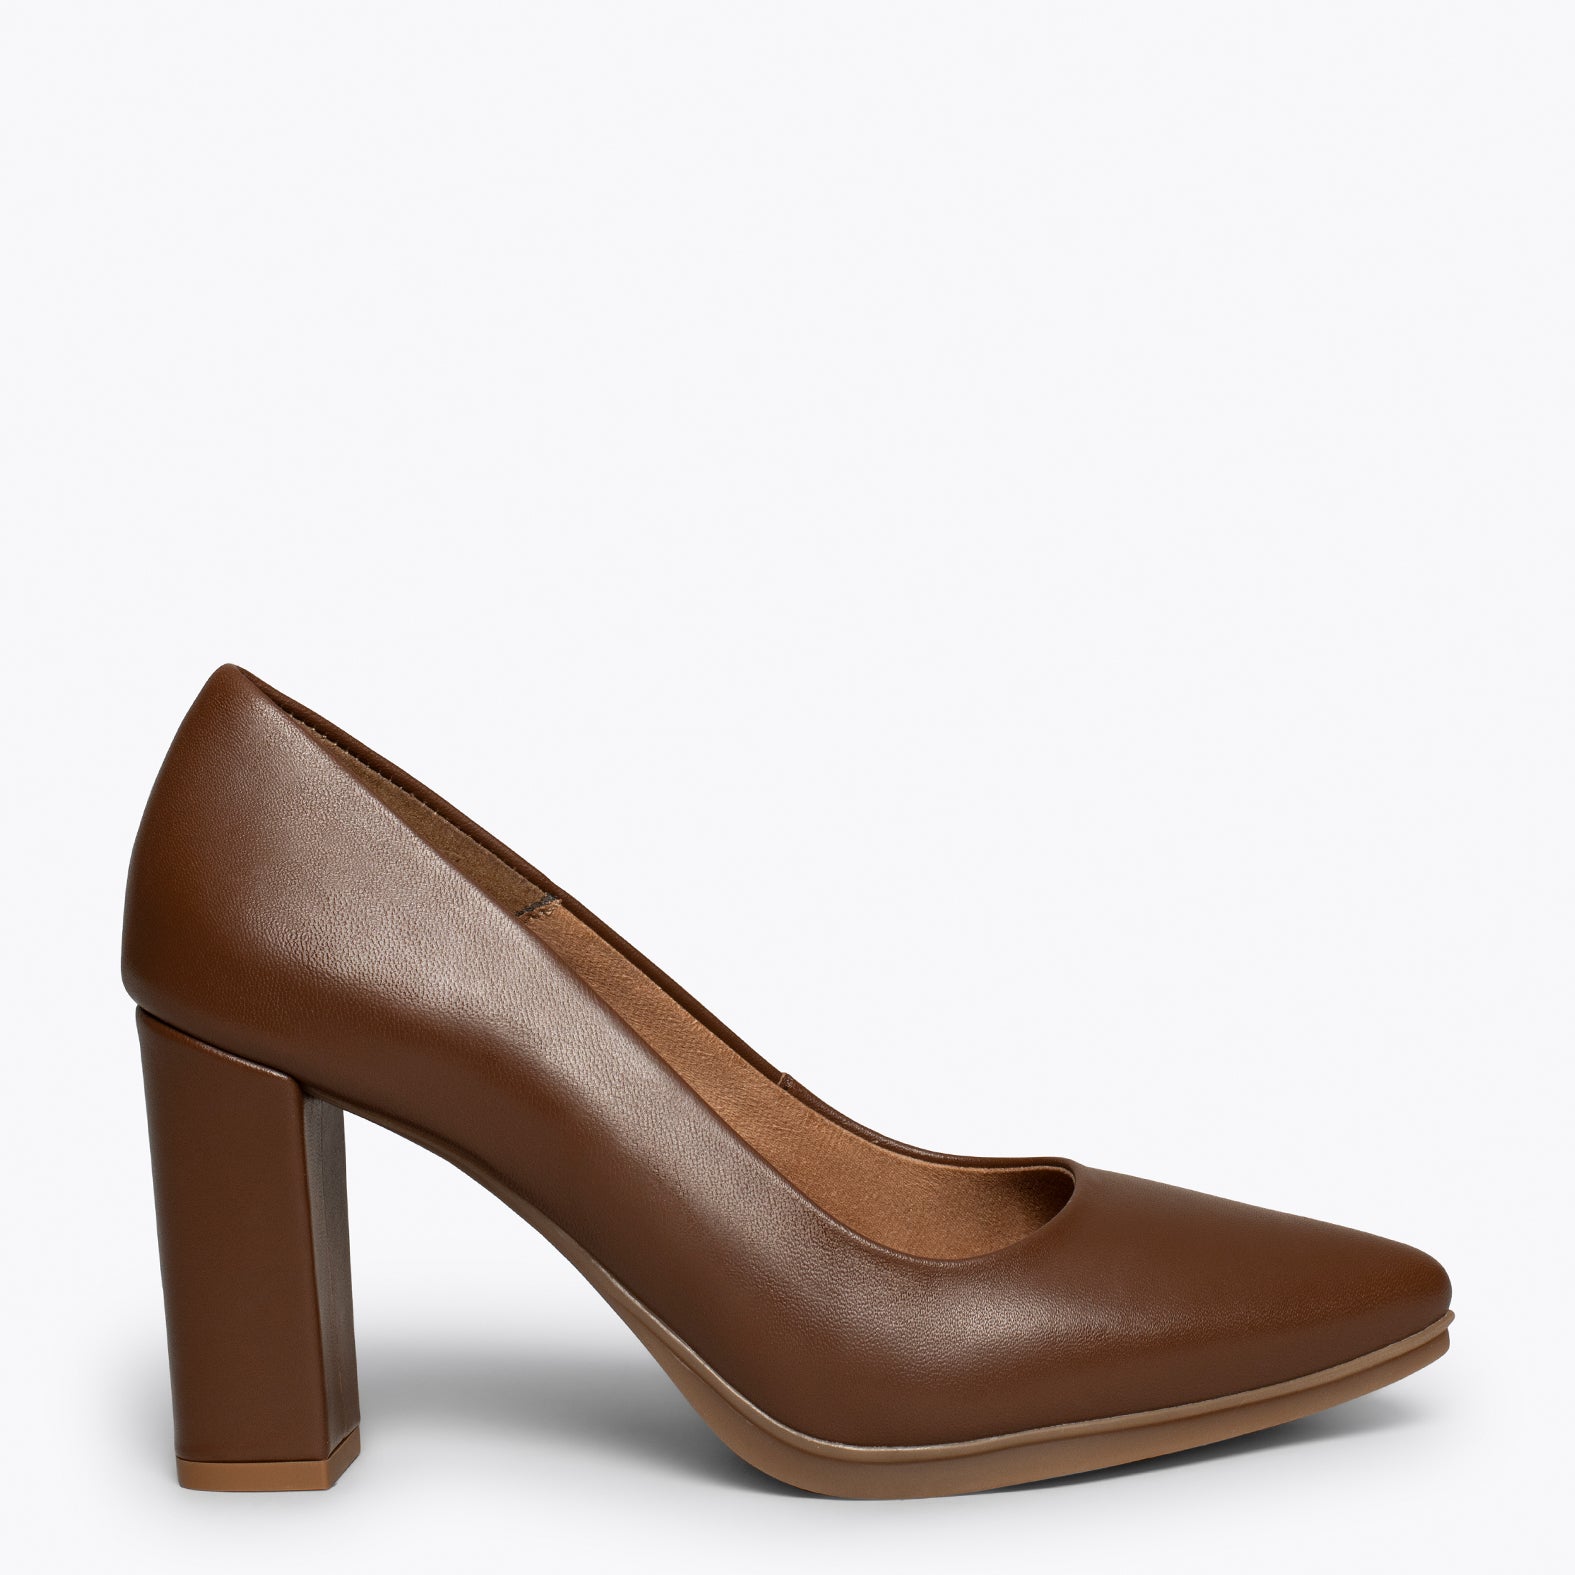 URBAN SALON – BROWN nappa leather high heel